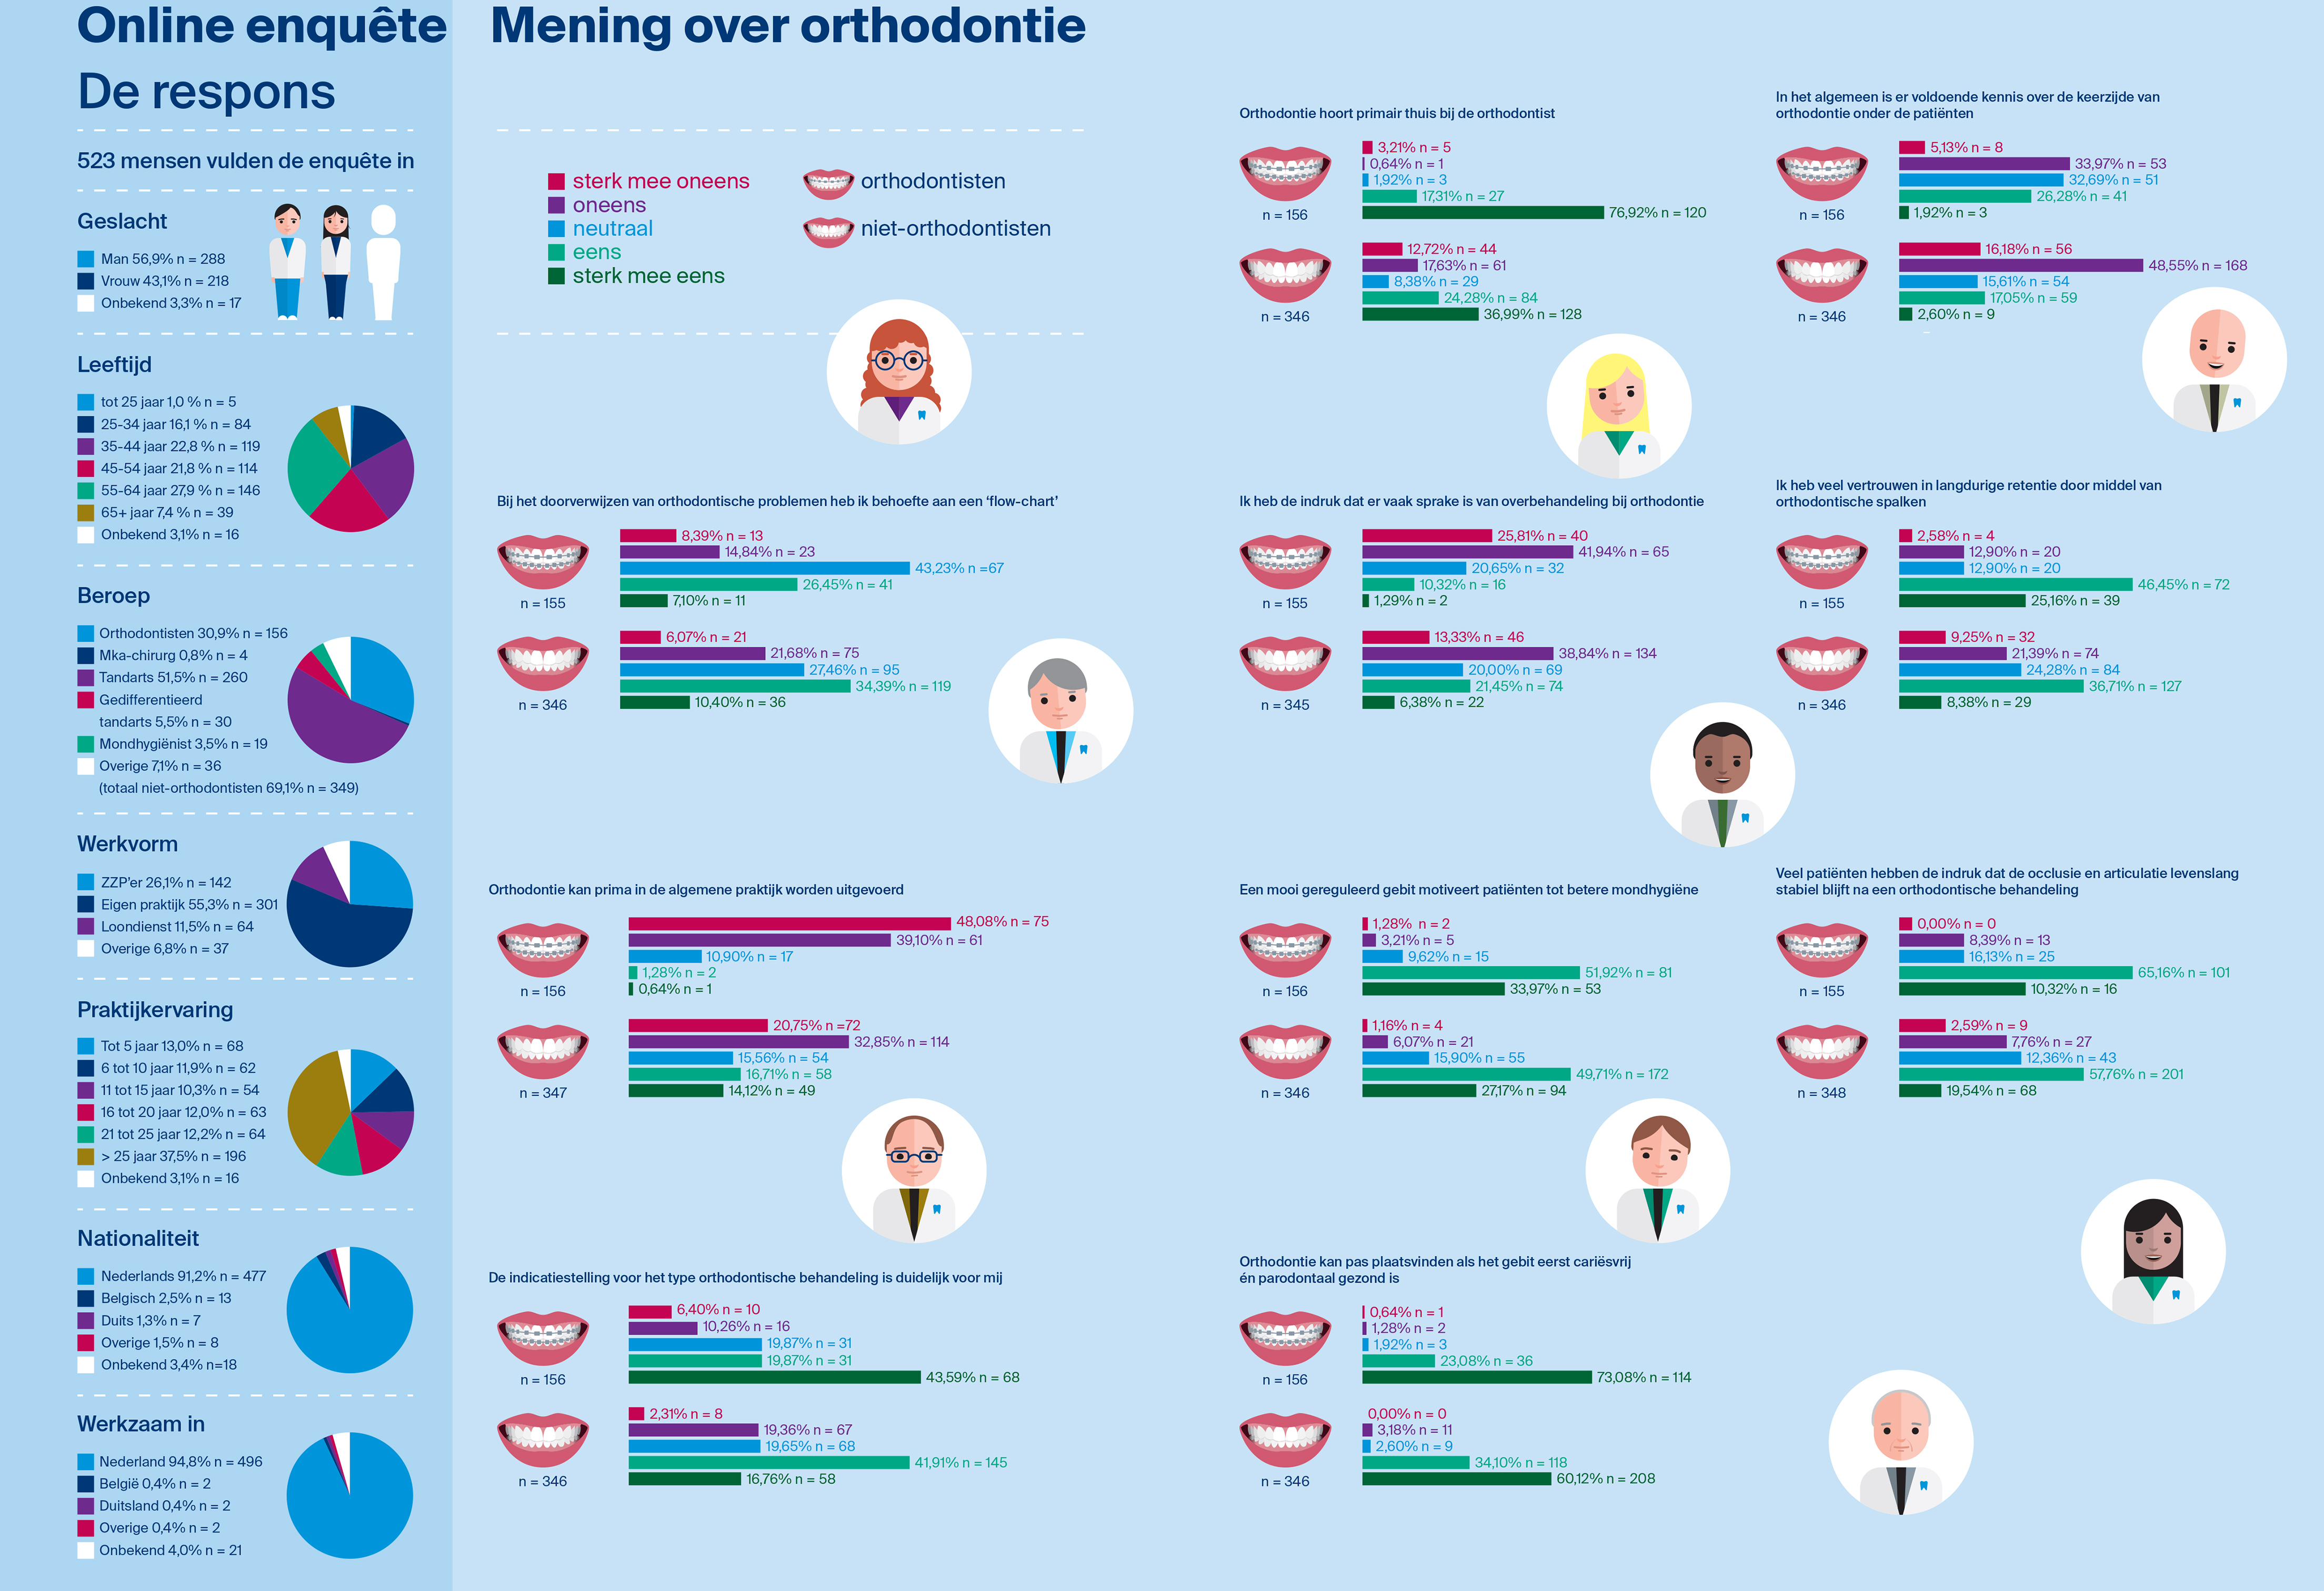 Mening over orthodontie: een online enquête onder NTVT-lezers